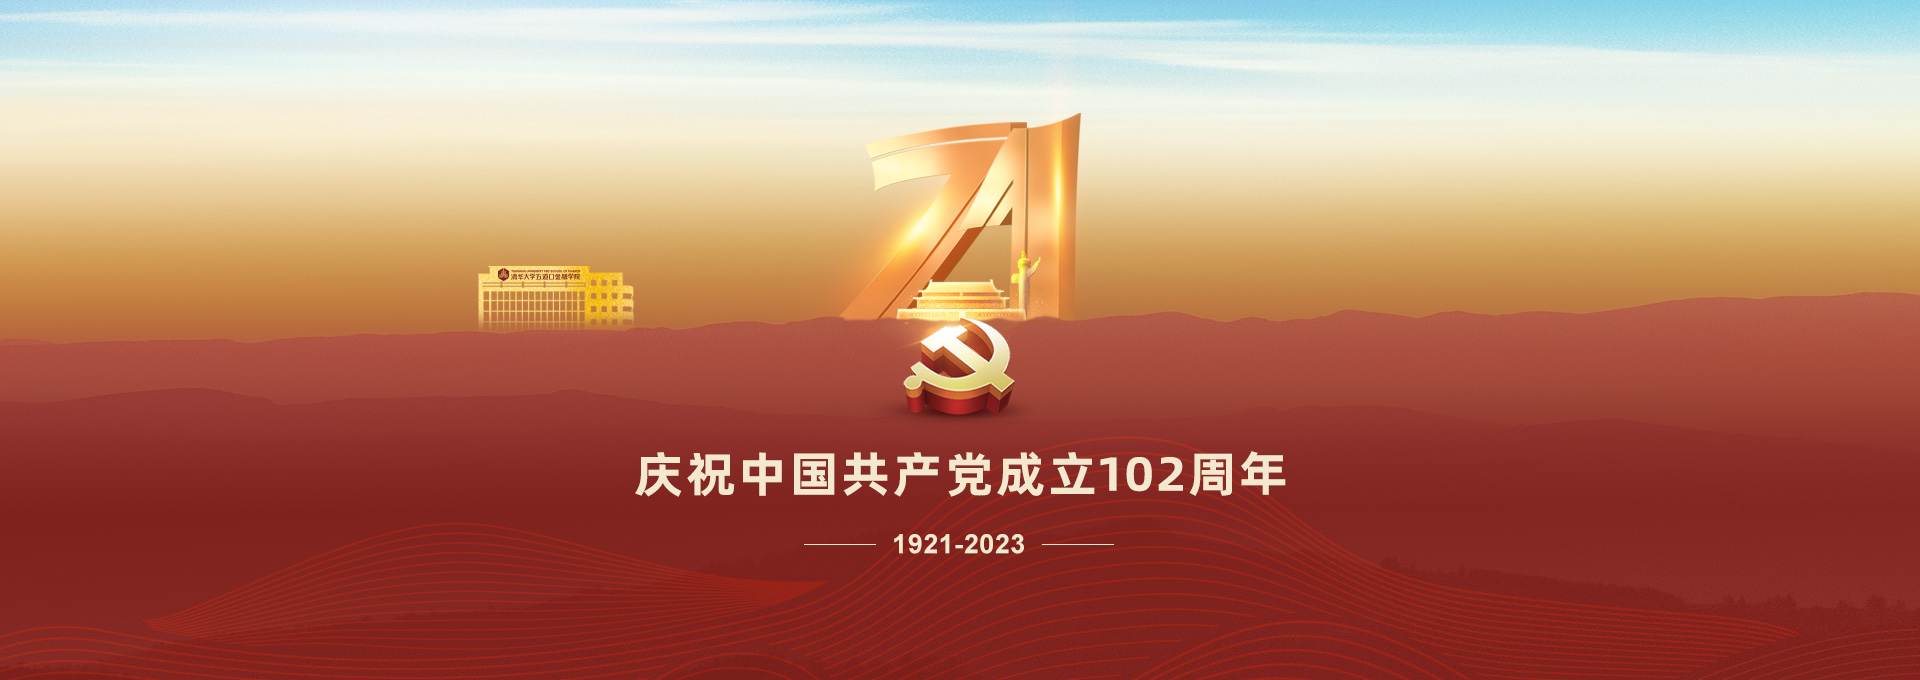 庆祝中国共产党成立102周年